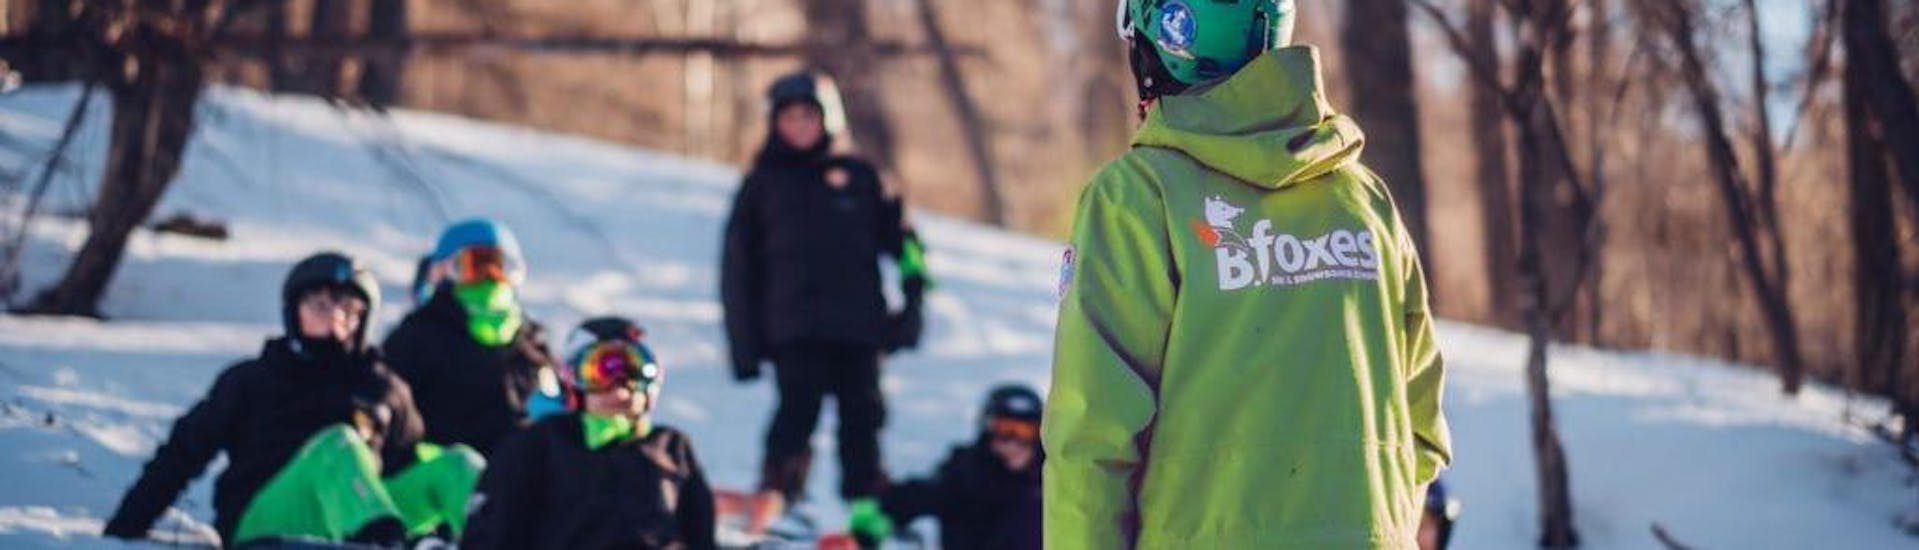 Privé snowboardlessen voor kinderen en volwassenen van alle niveaus.